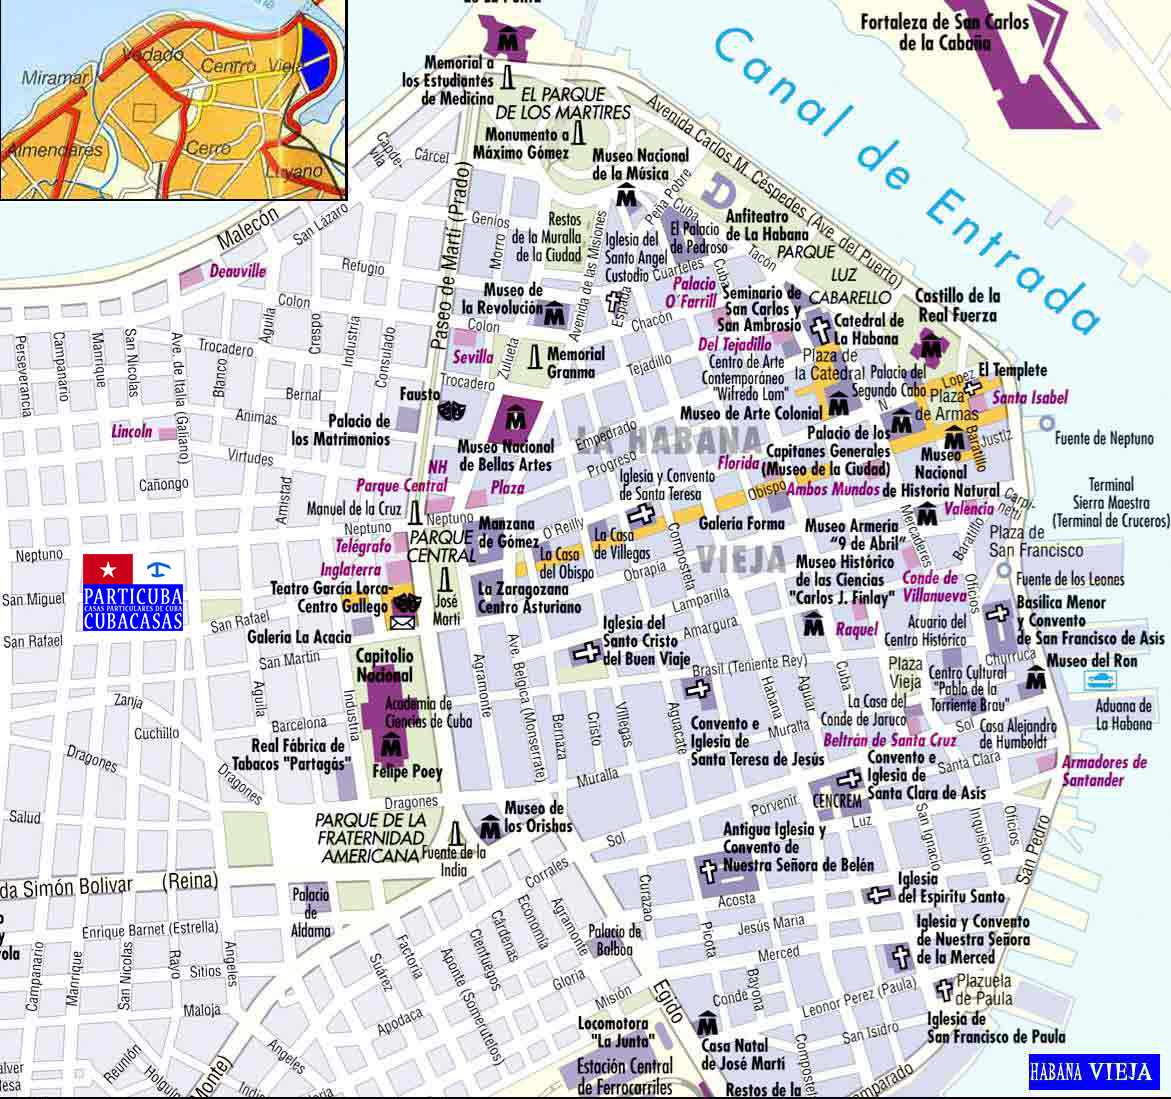 Mapa Habana Vieja en processus d'affichage. Please wait while map loads.